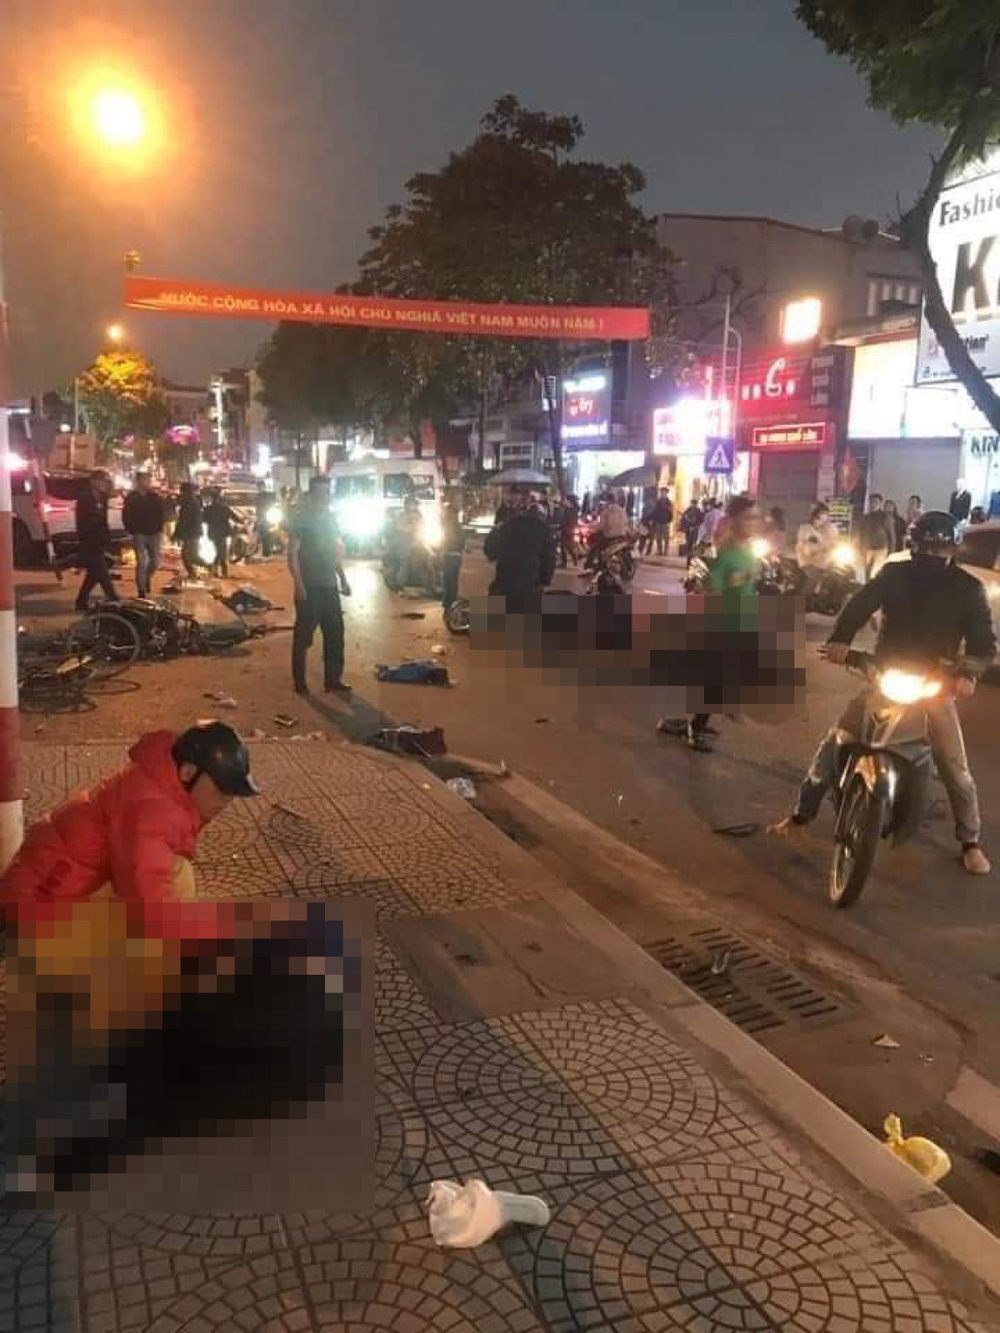 Ô tô đâm liên hoàn làm 2 người chết, 4 người bị thương nặng ở Quảng Ninh - Ảnh 1.